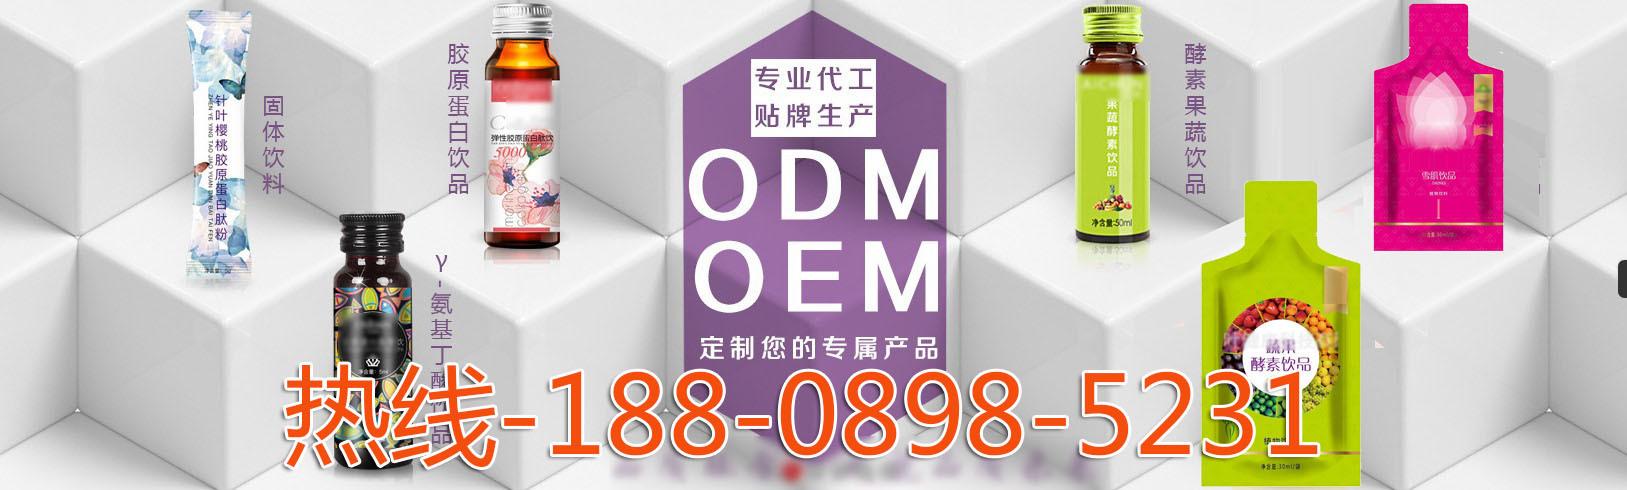 3c上海odm代加工基地tel-188-0898-5231.